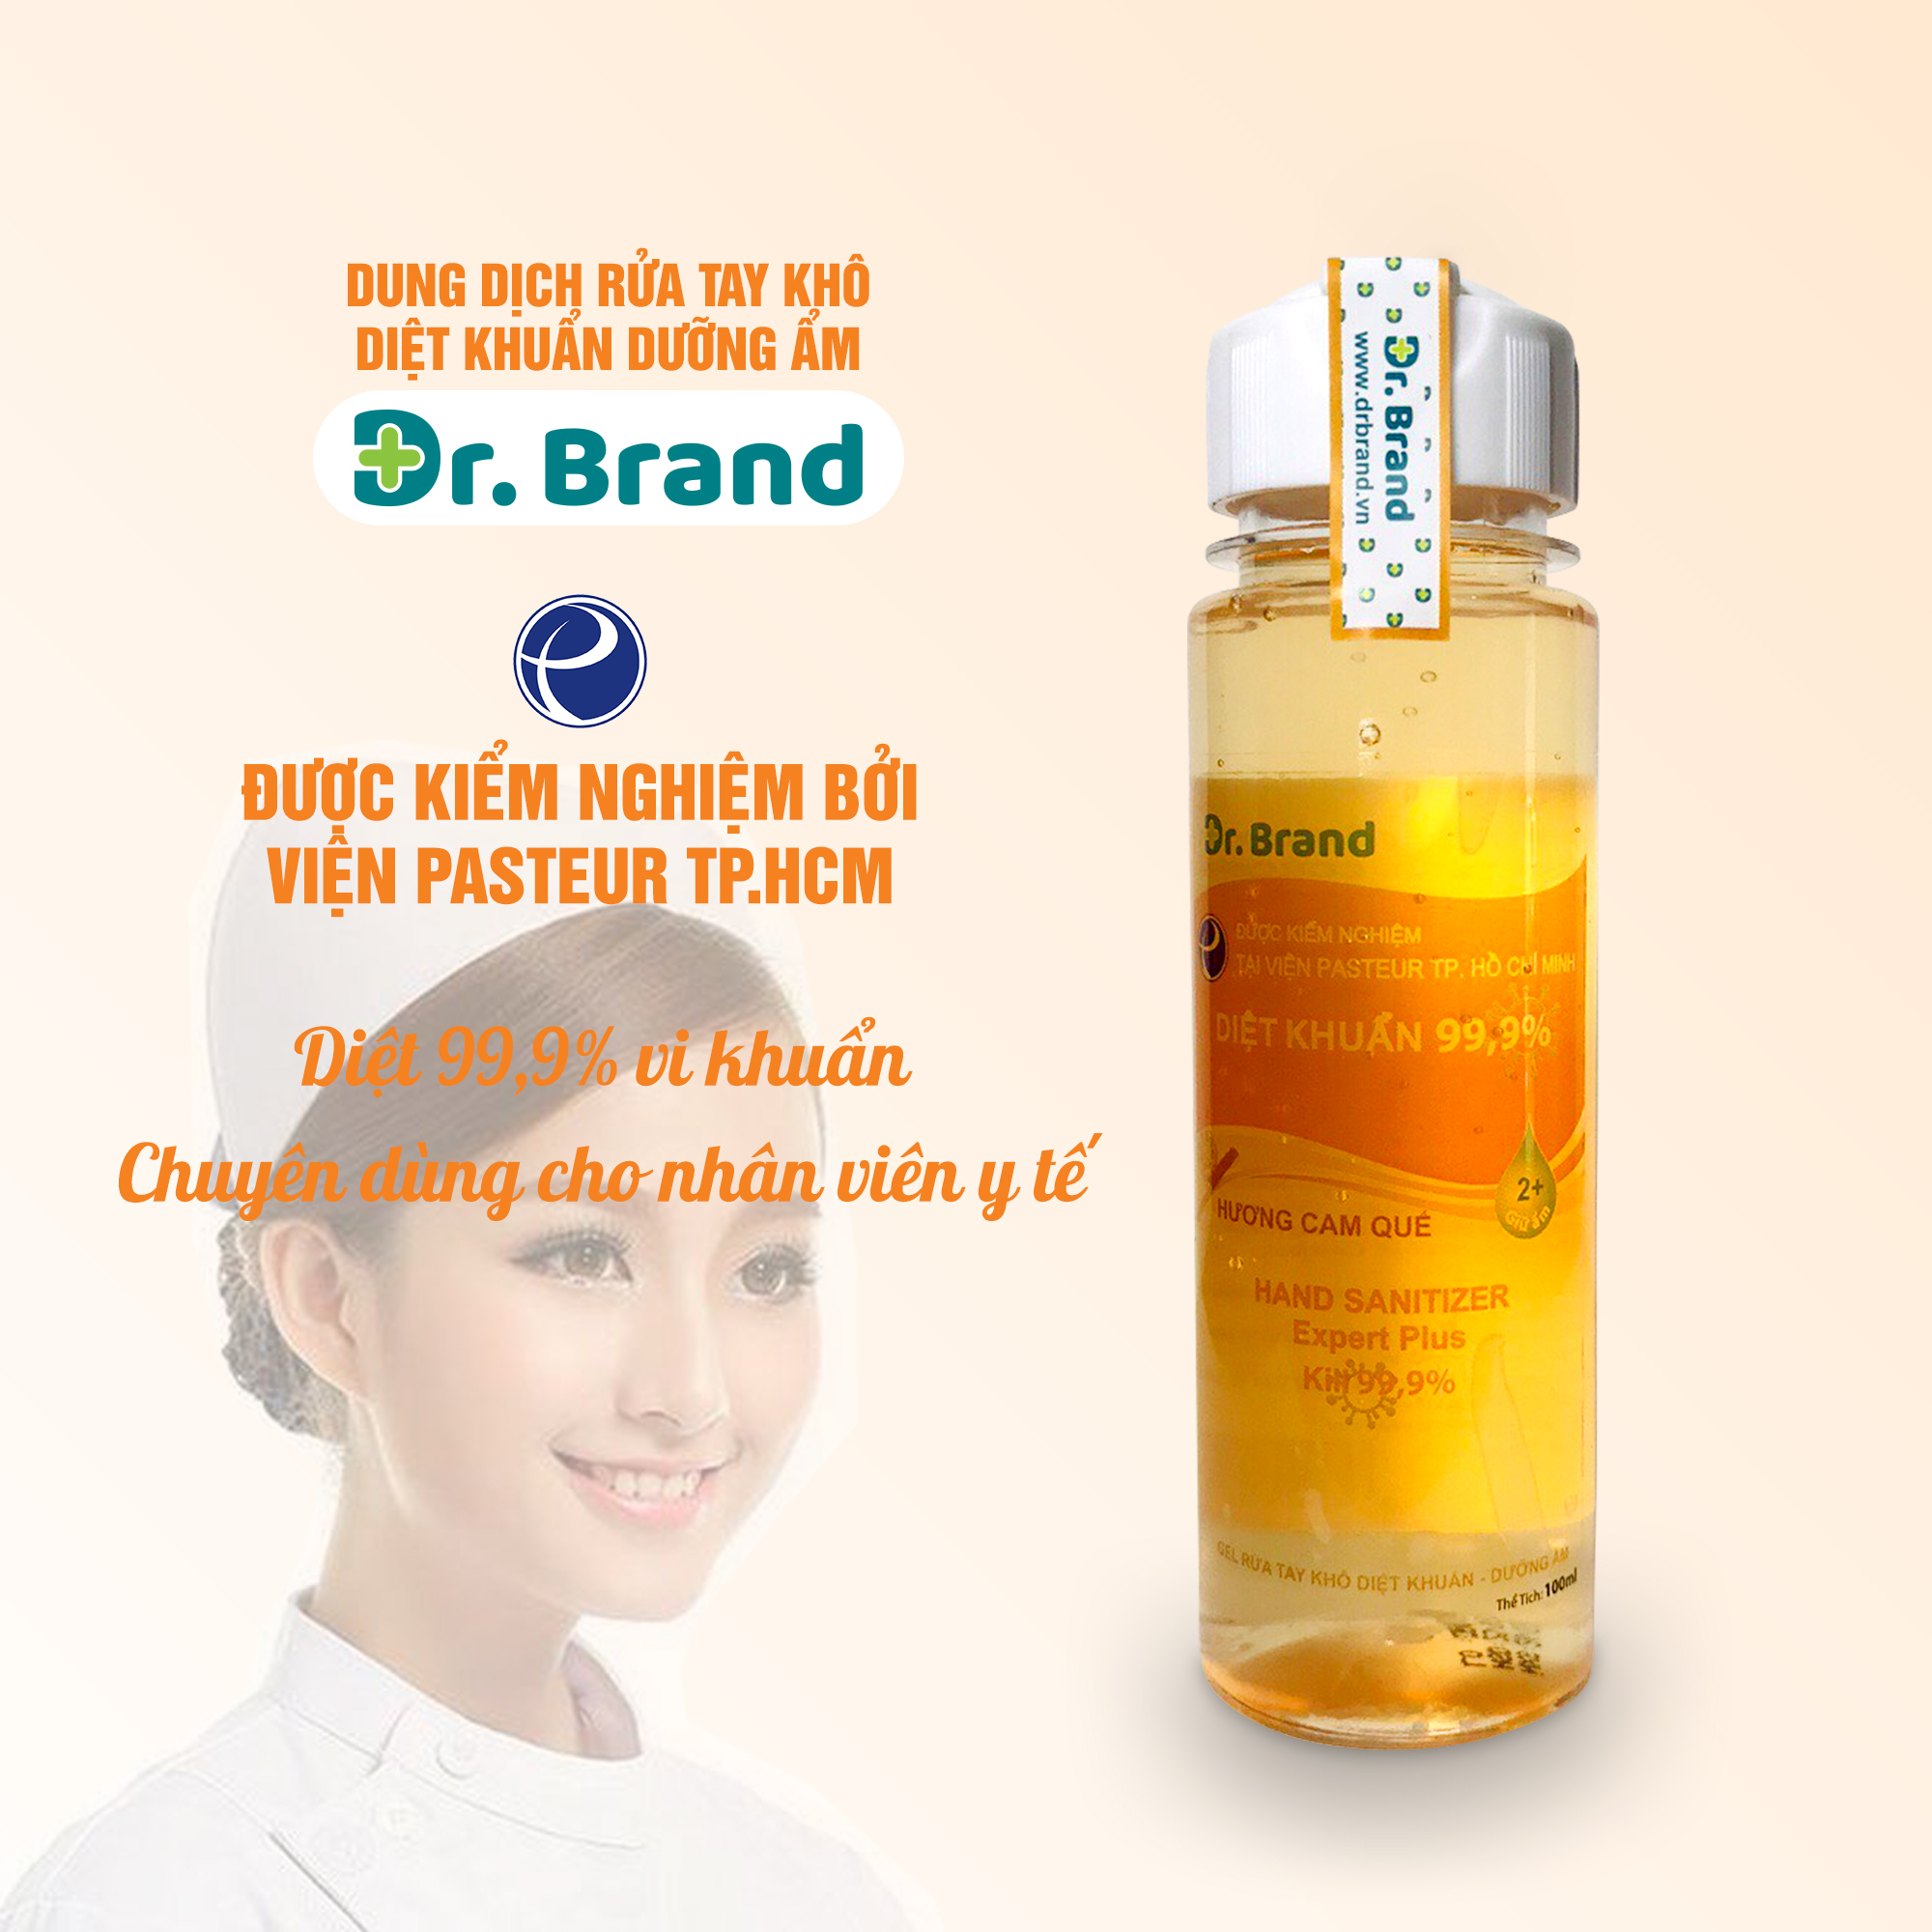 Nước rửa tay khô sát khuẩn, ngăn ngừa virus chuyên dùng cho nhân viên y tế, được kiểm nghiệm tại viện Pasteur Tp.Hồ Chí Minh – Dr.Brand – HƯƠNG CAM QUẾ